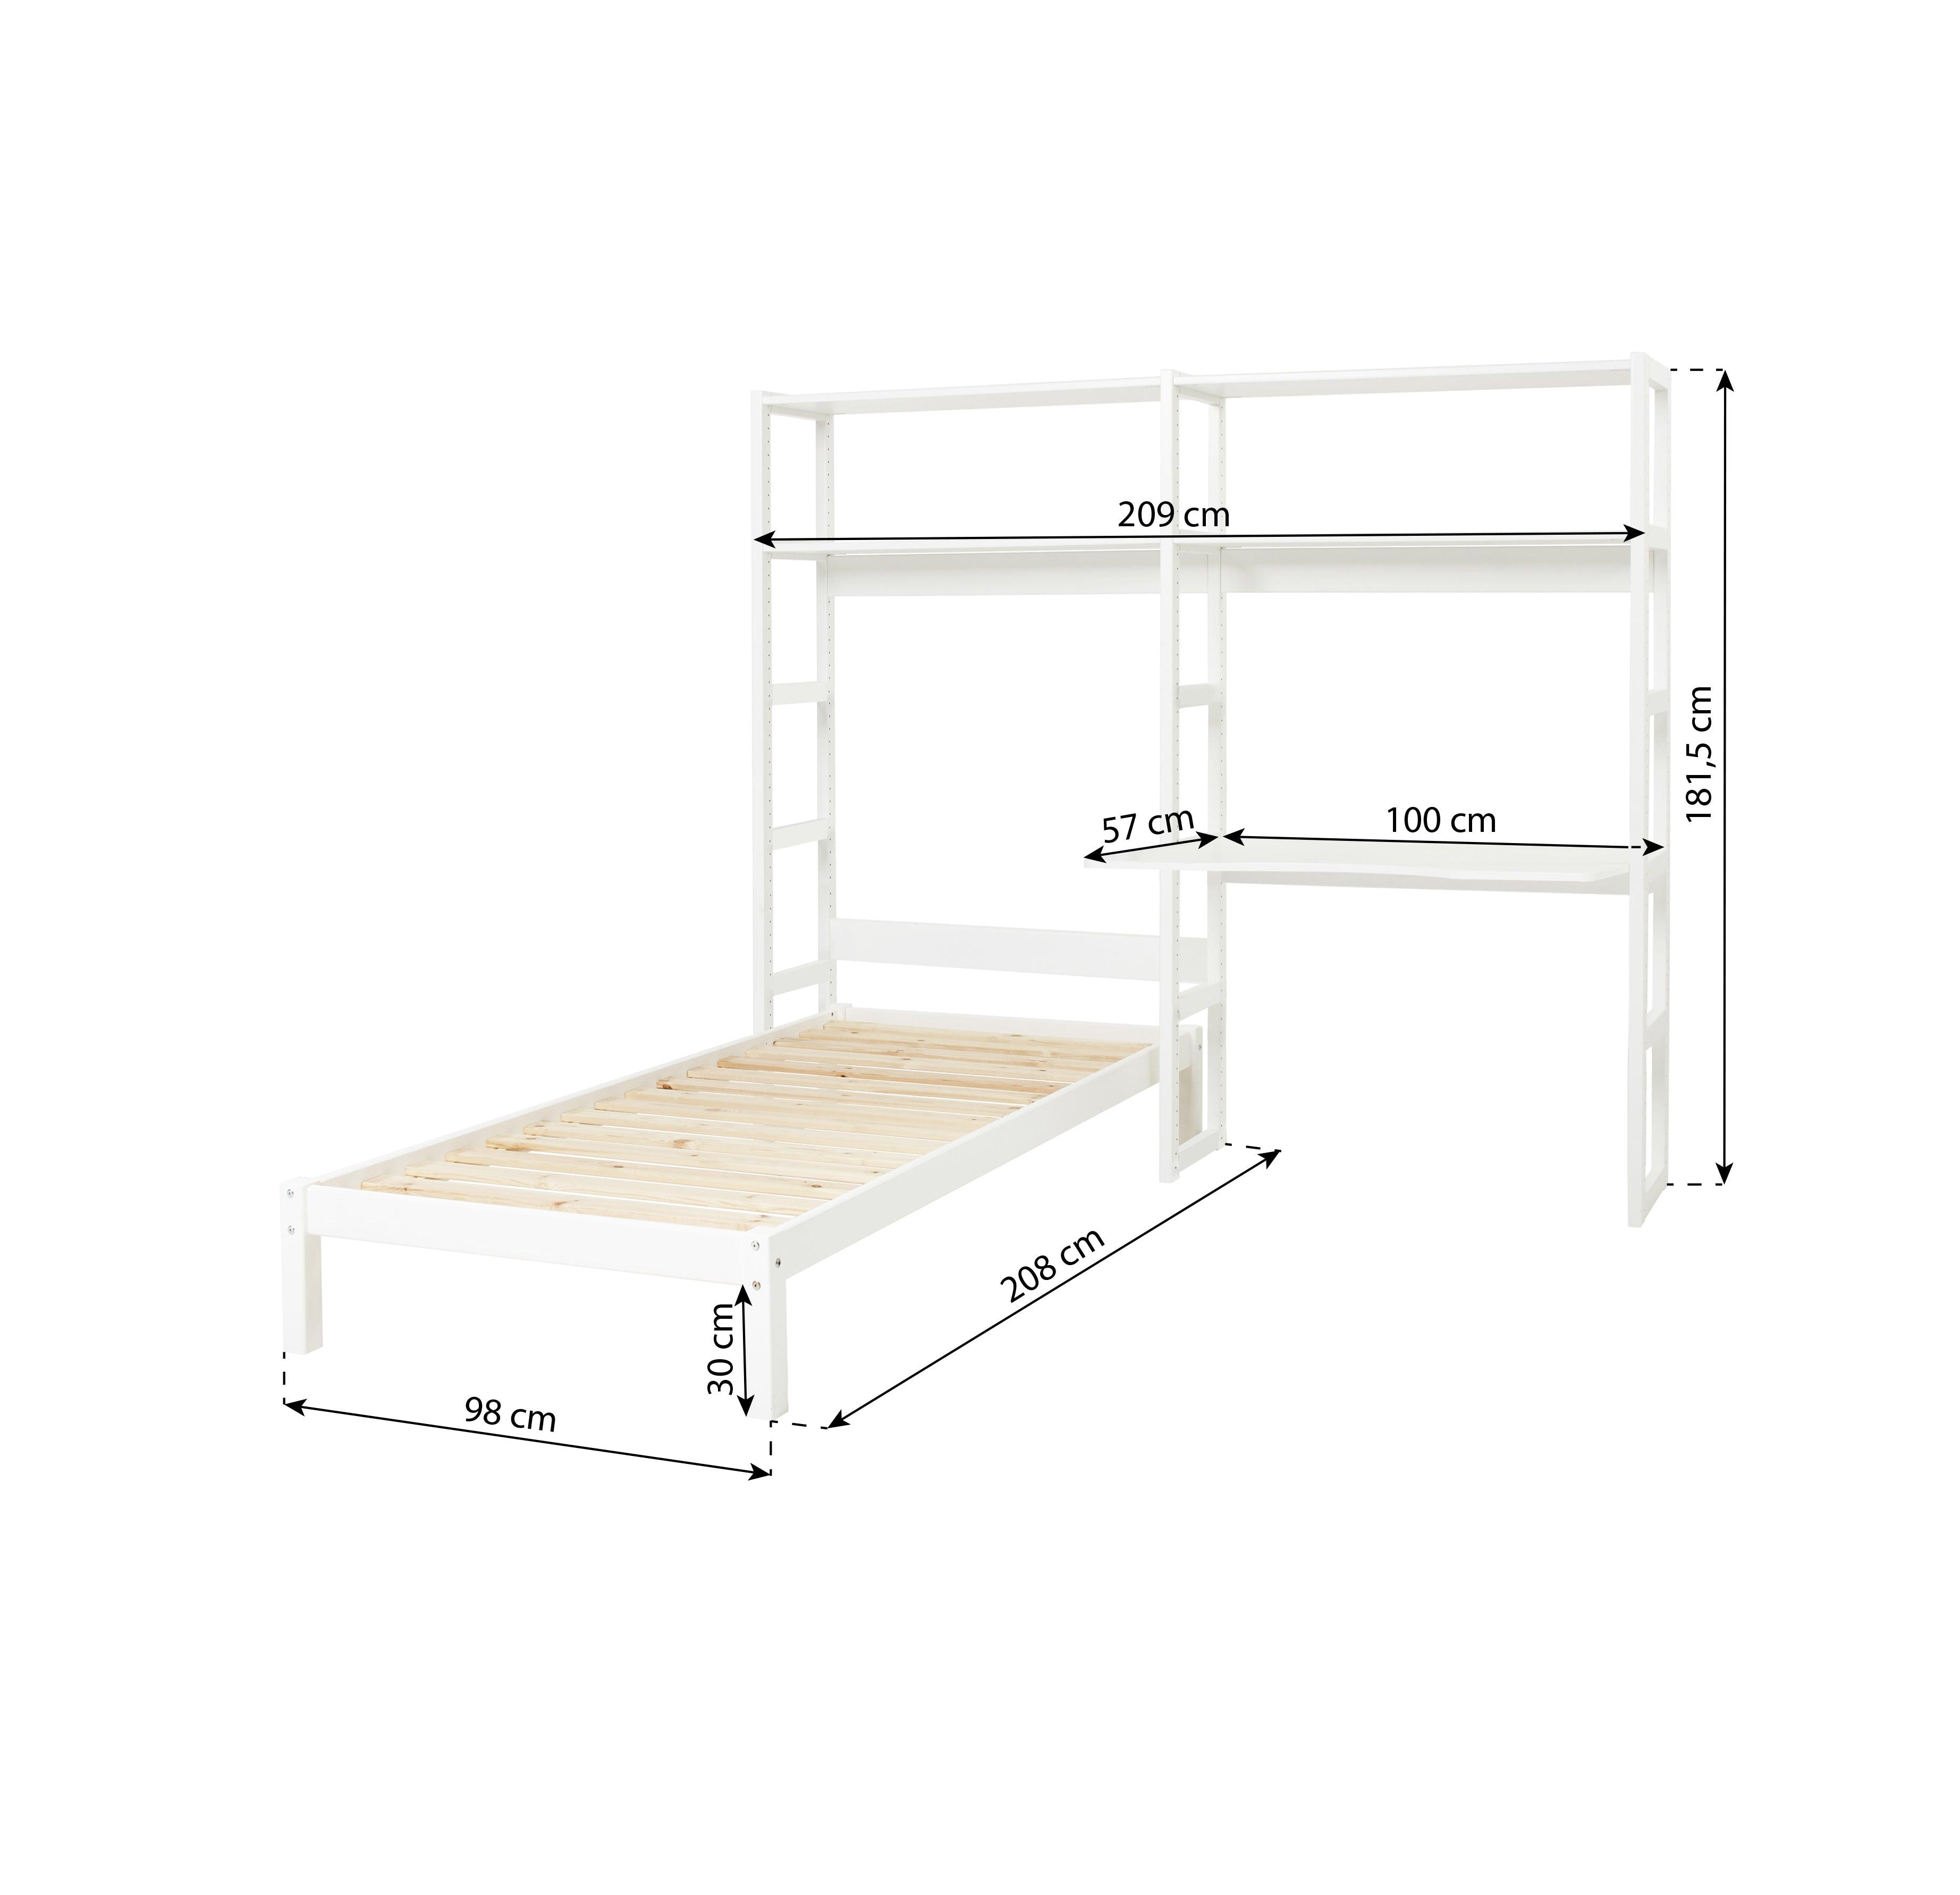 Hoppekids estantería de dos secciones, con 4 estantes, cama de 70x160 cm y escritorio de 80 cm, color blanco.